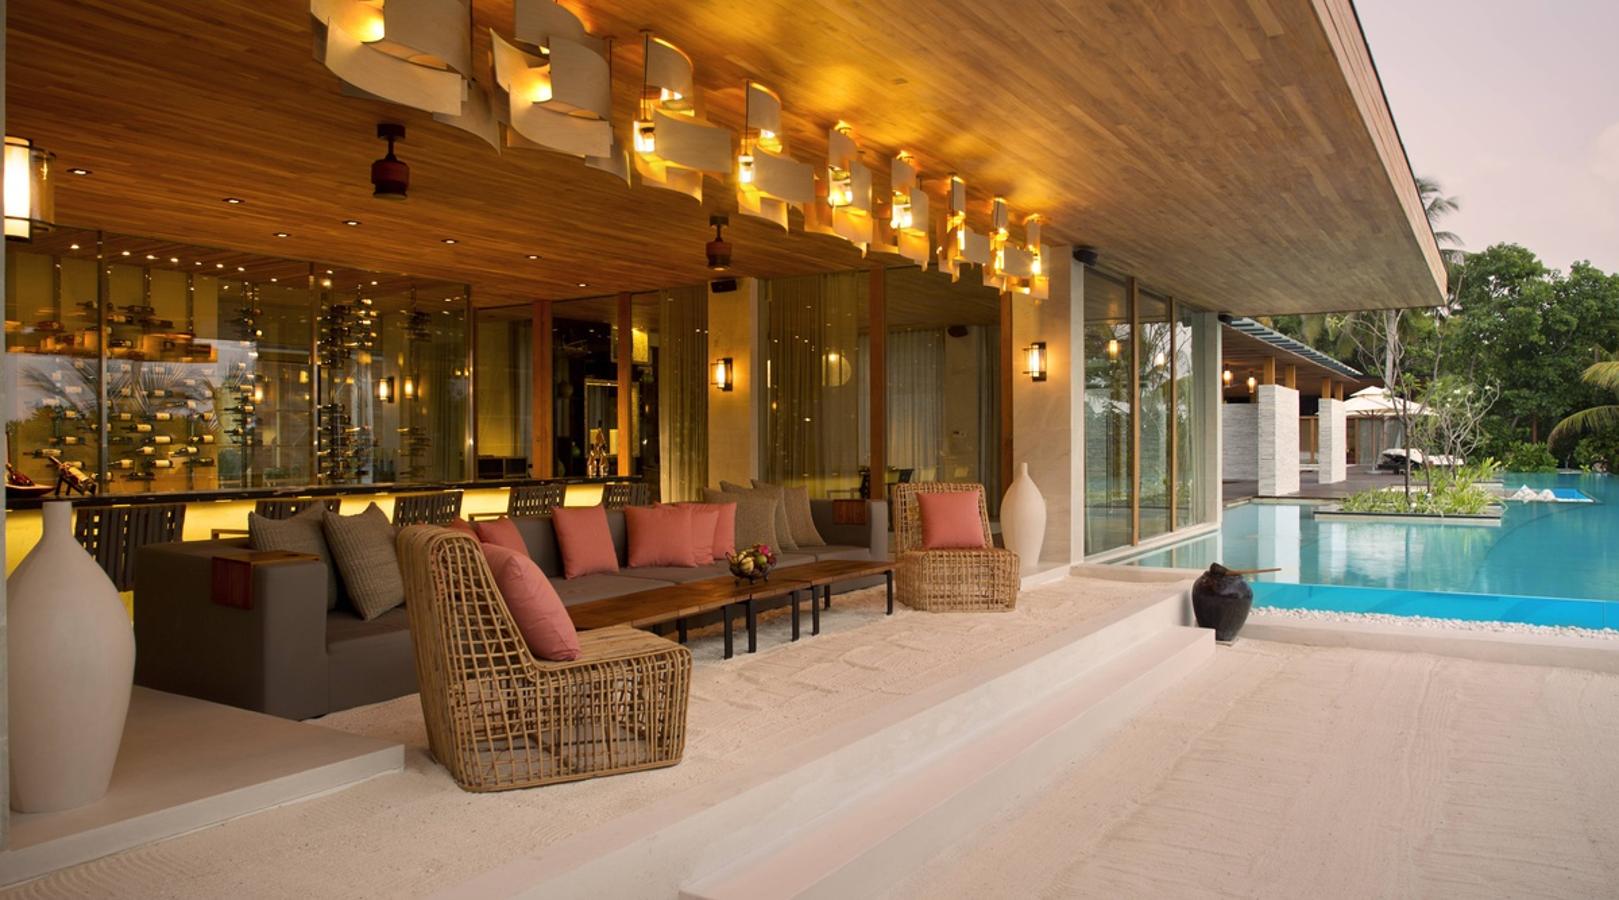 La isla de Maldivas de 40.000 dólares la noche. Los interiores están inspirados en la vida isleña relajada, mezclando una paleta neutra con acentos de madera, obras de arte a medida, toques de alta tecnología y ventanas del piso al techo.